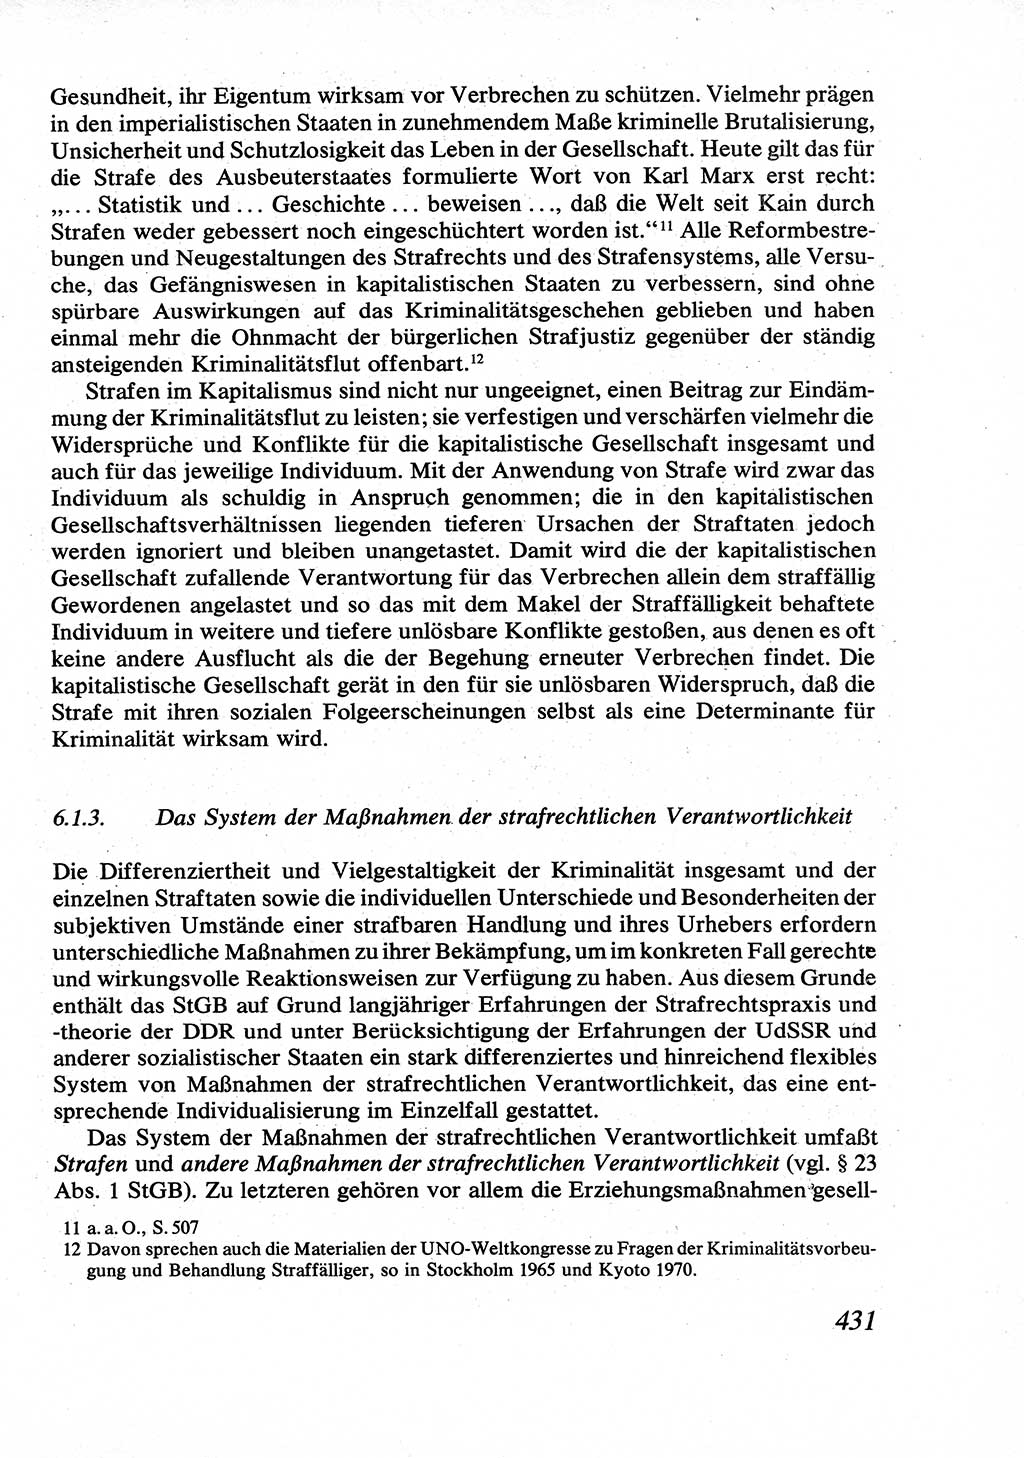 Strafrecht [Deutsche Demokratische Republik (DDR)], Allgemeiner Teil, Lehrbuch 1976, Seite 431 (Strafr. DDR AT Lb. 1976, S. 431)